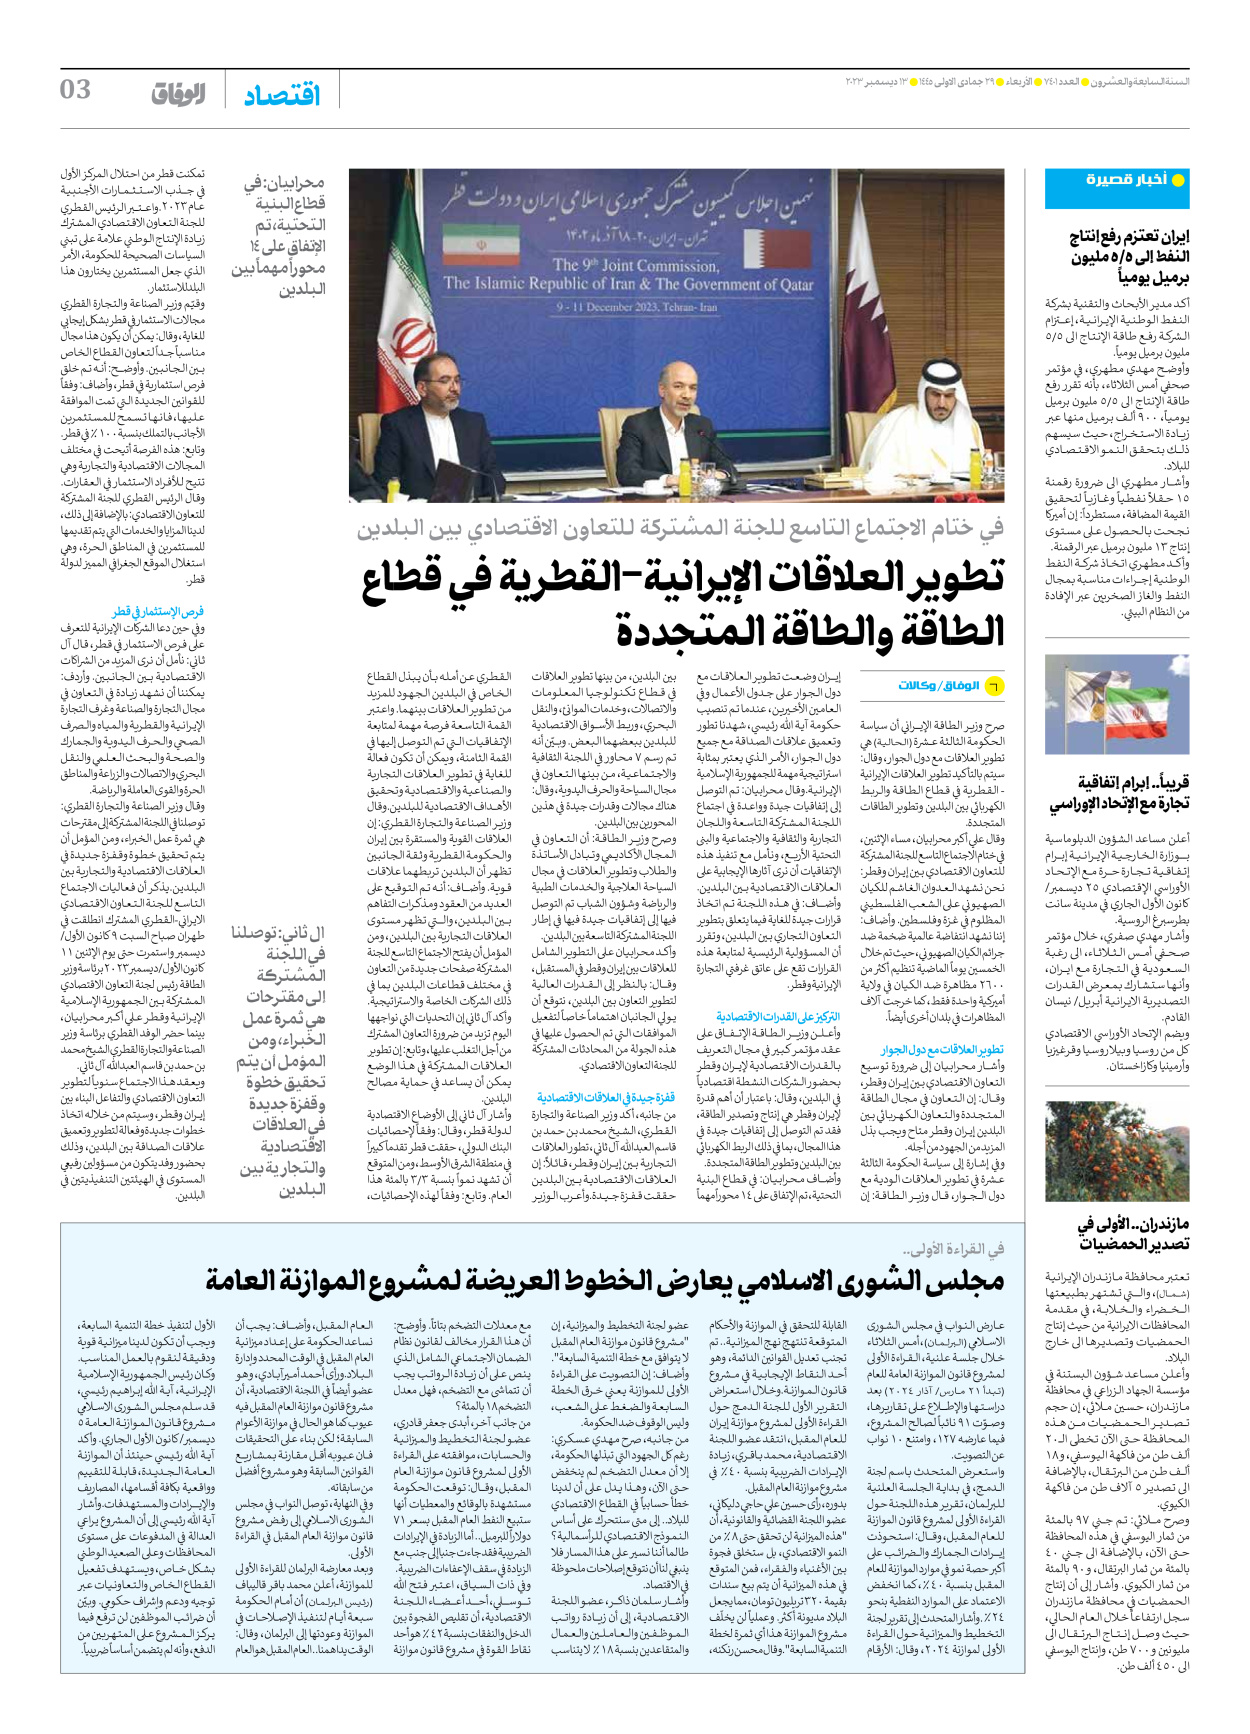 صحیفة ایران الدولیة الوفاق - العدد سبعة آلاف وأربعمائة وواحد - ١٣ ديسمبر ٢٠٢٣ - الصفحة ۳